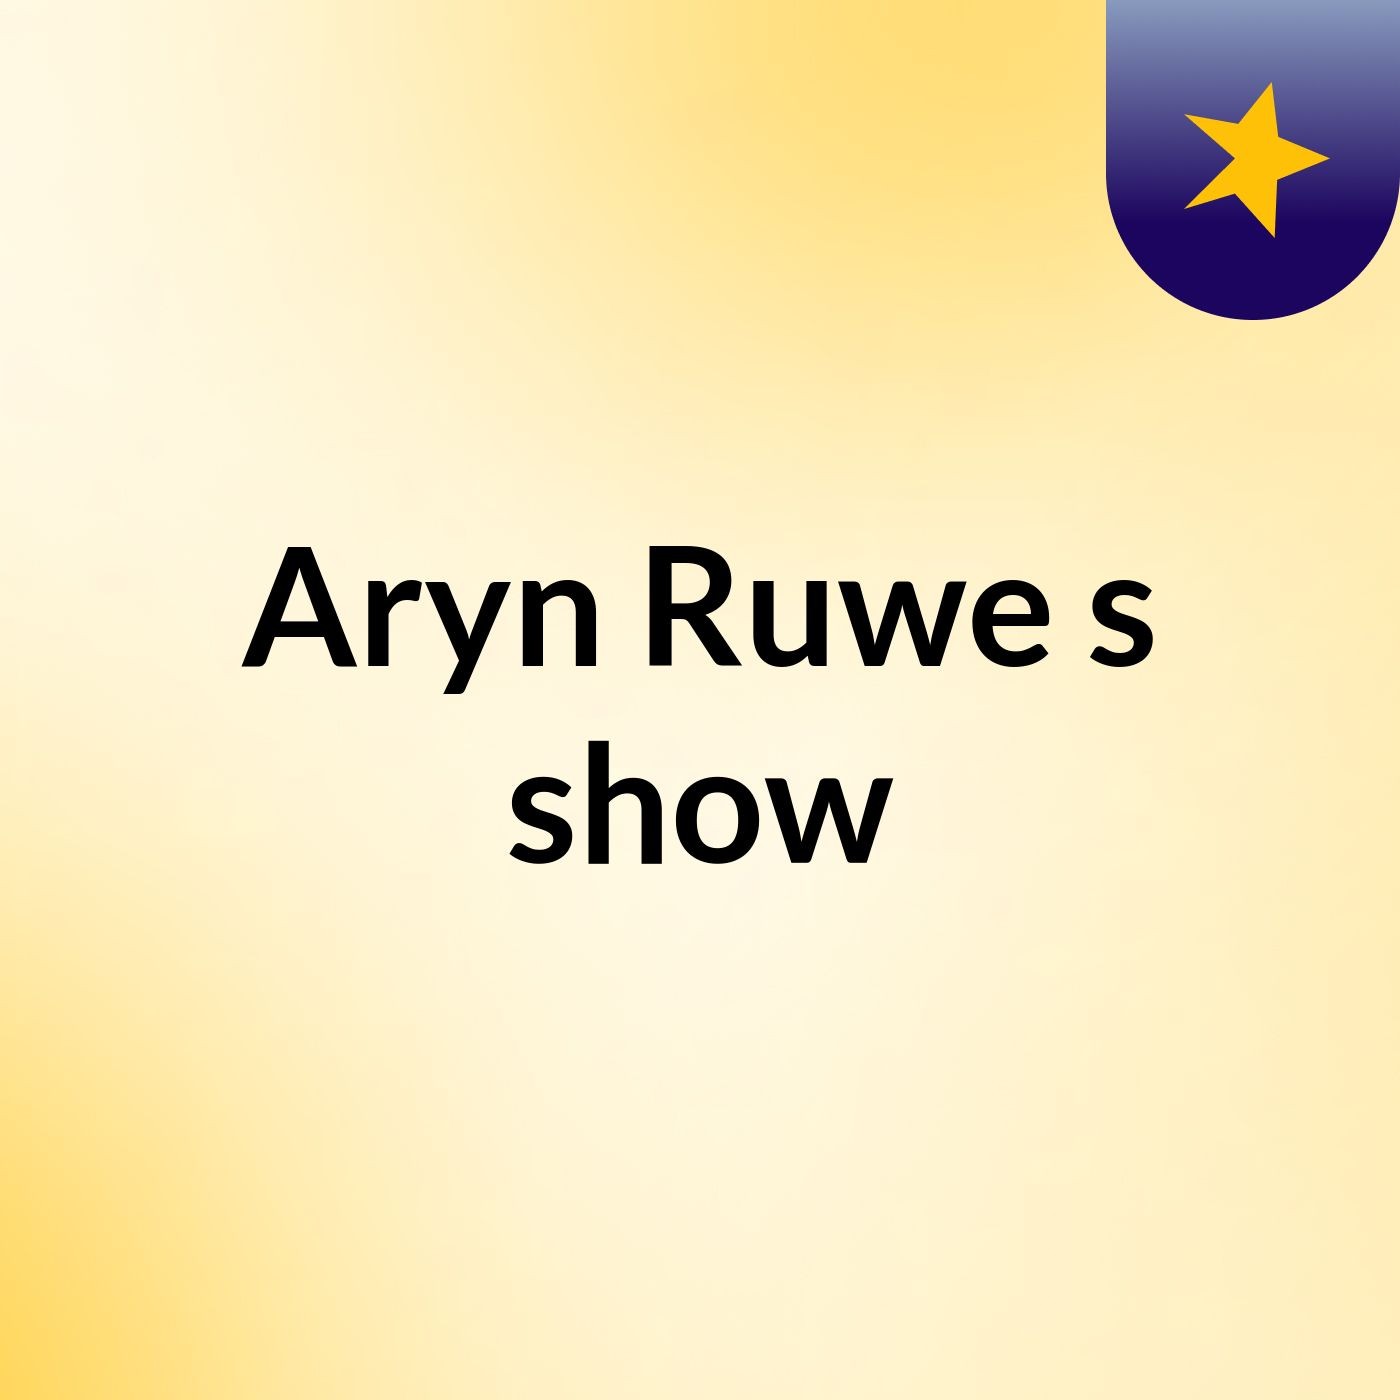 Aryn Ruwe's show